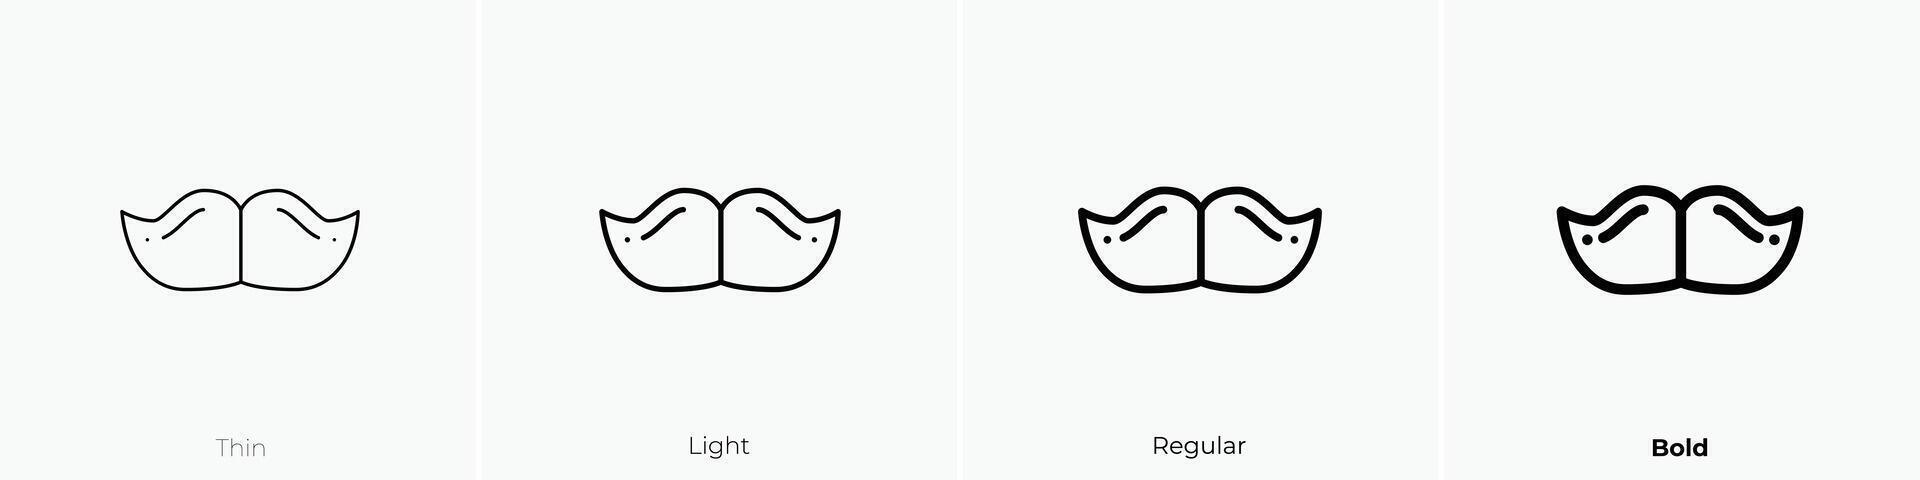 mustasch ikon. tunn, ljus, regelbunden och djärv stil design isolerat på vit bakgrund vektor